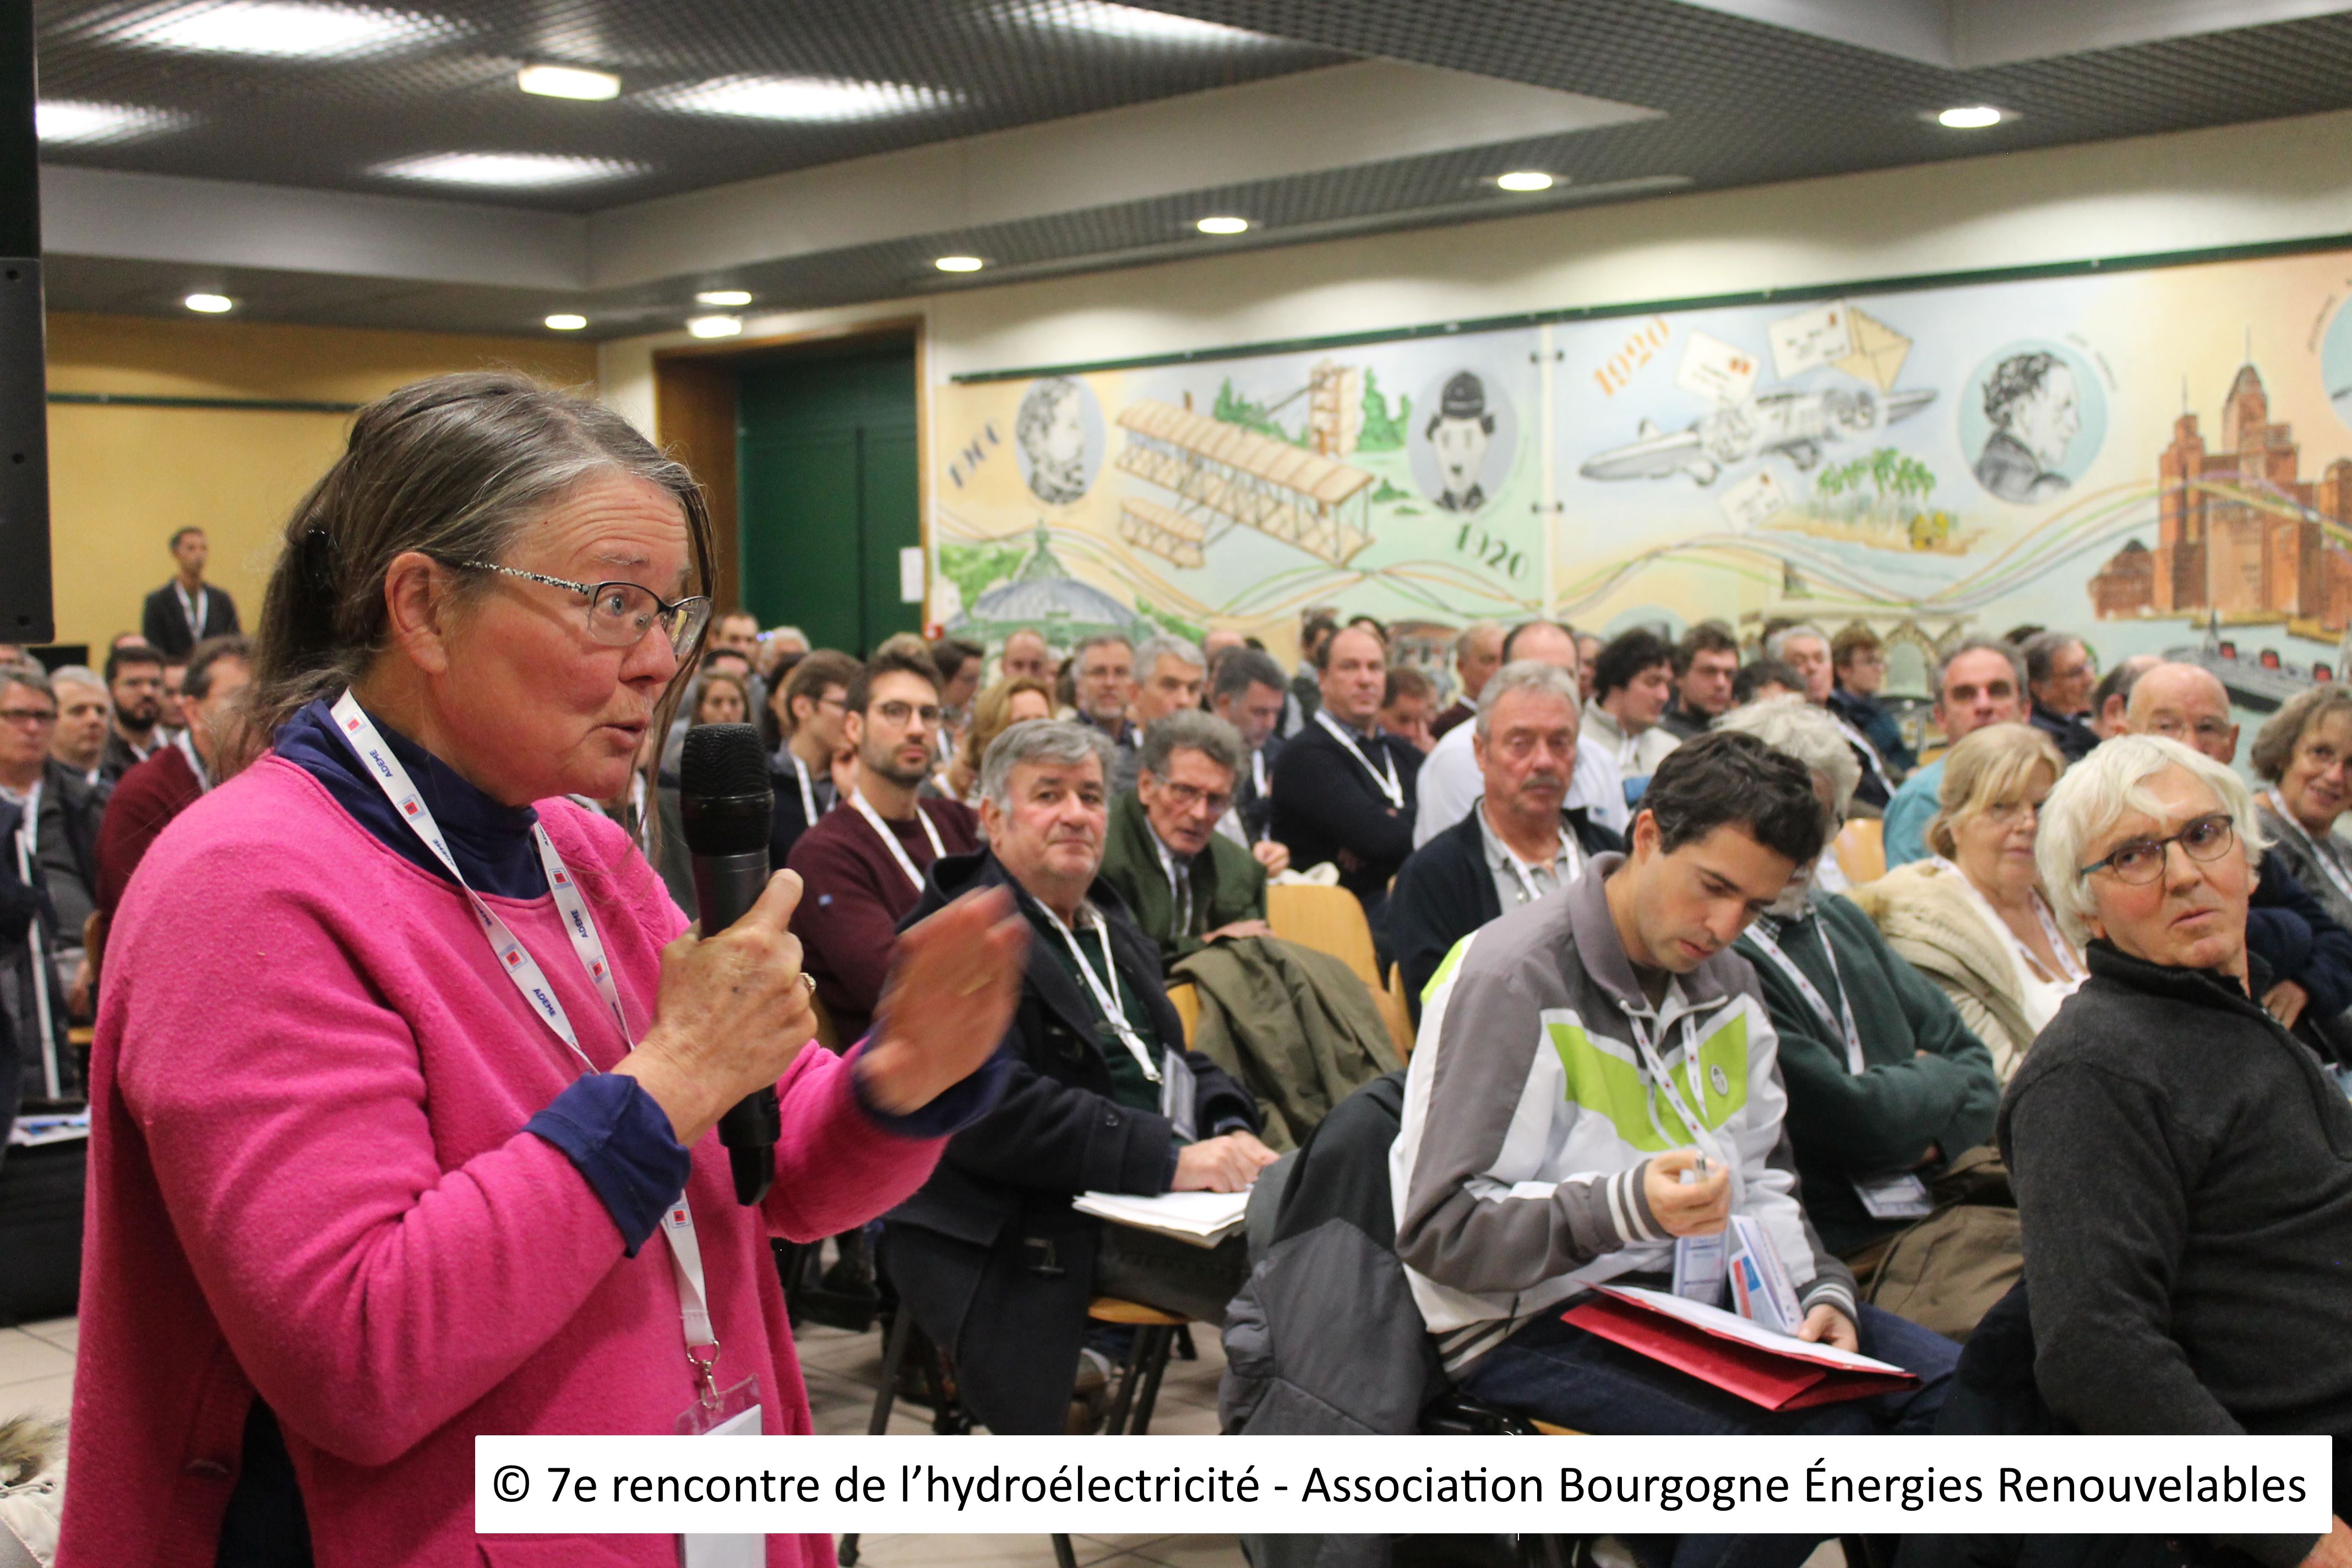 5 - © 7e rencontre de l’hydroélectricité - Association Bourgogne Énergies Renouvelables